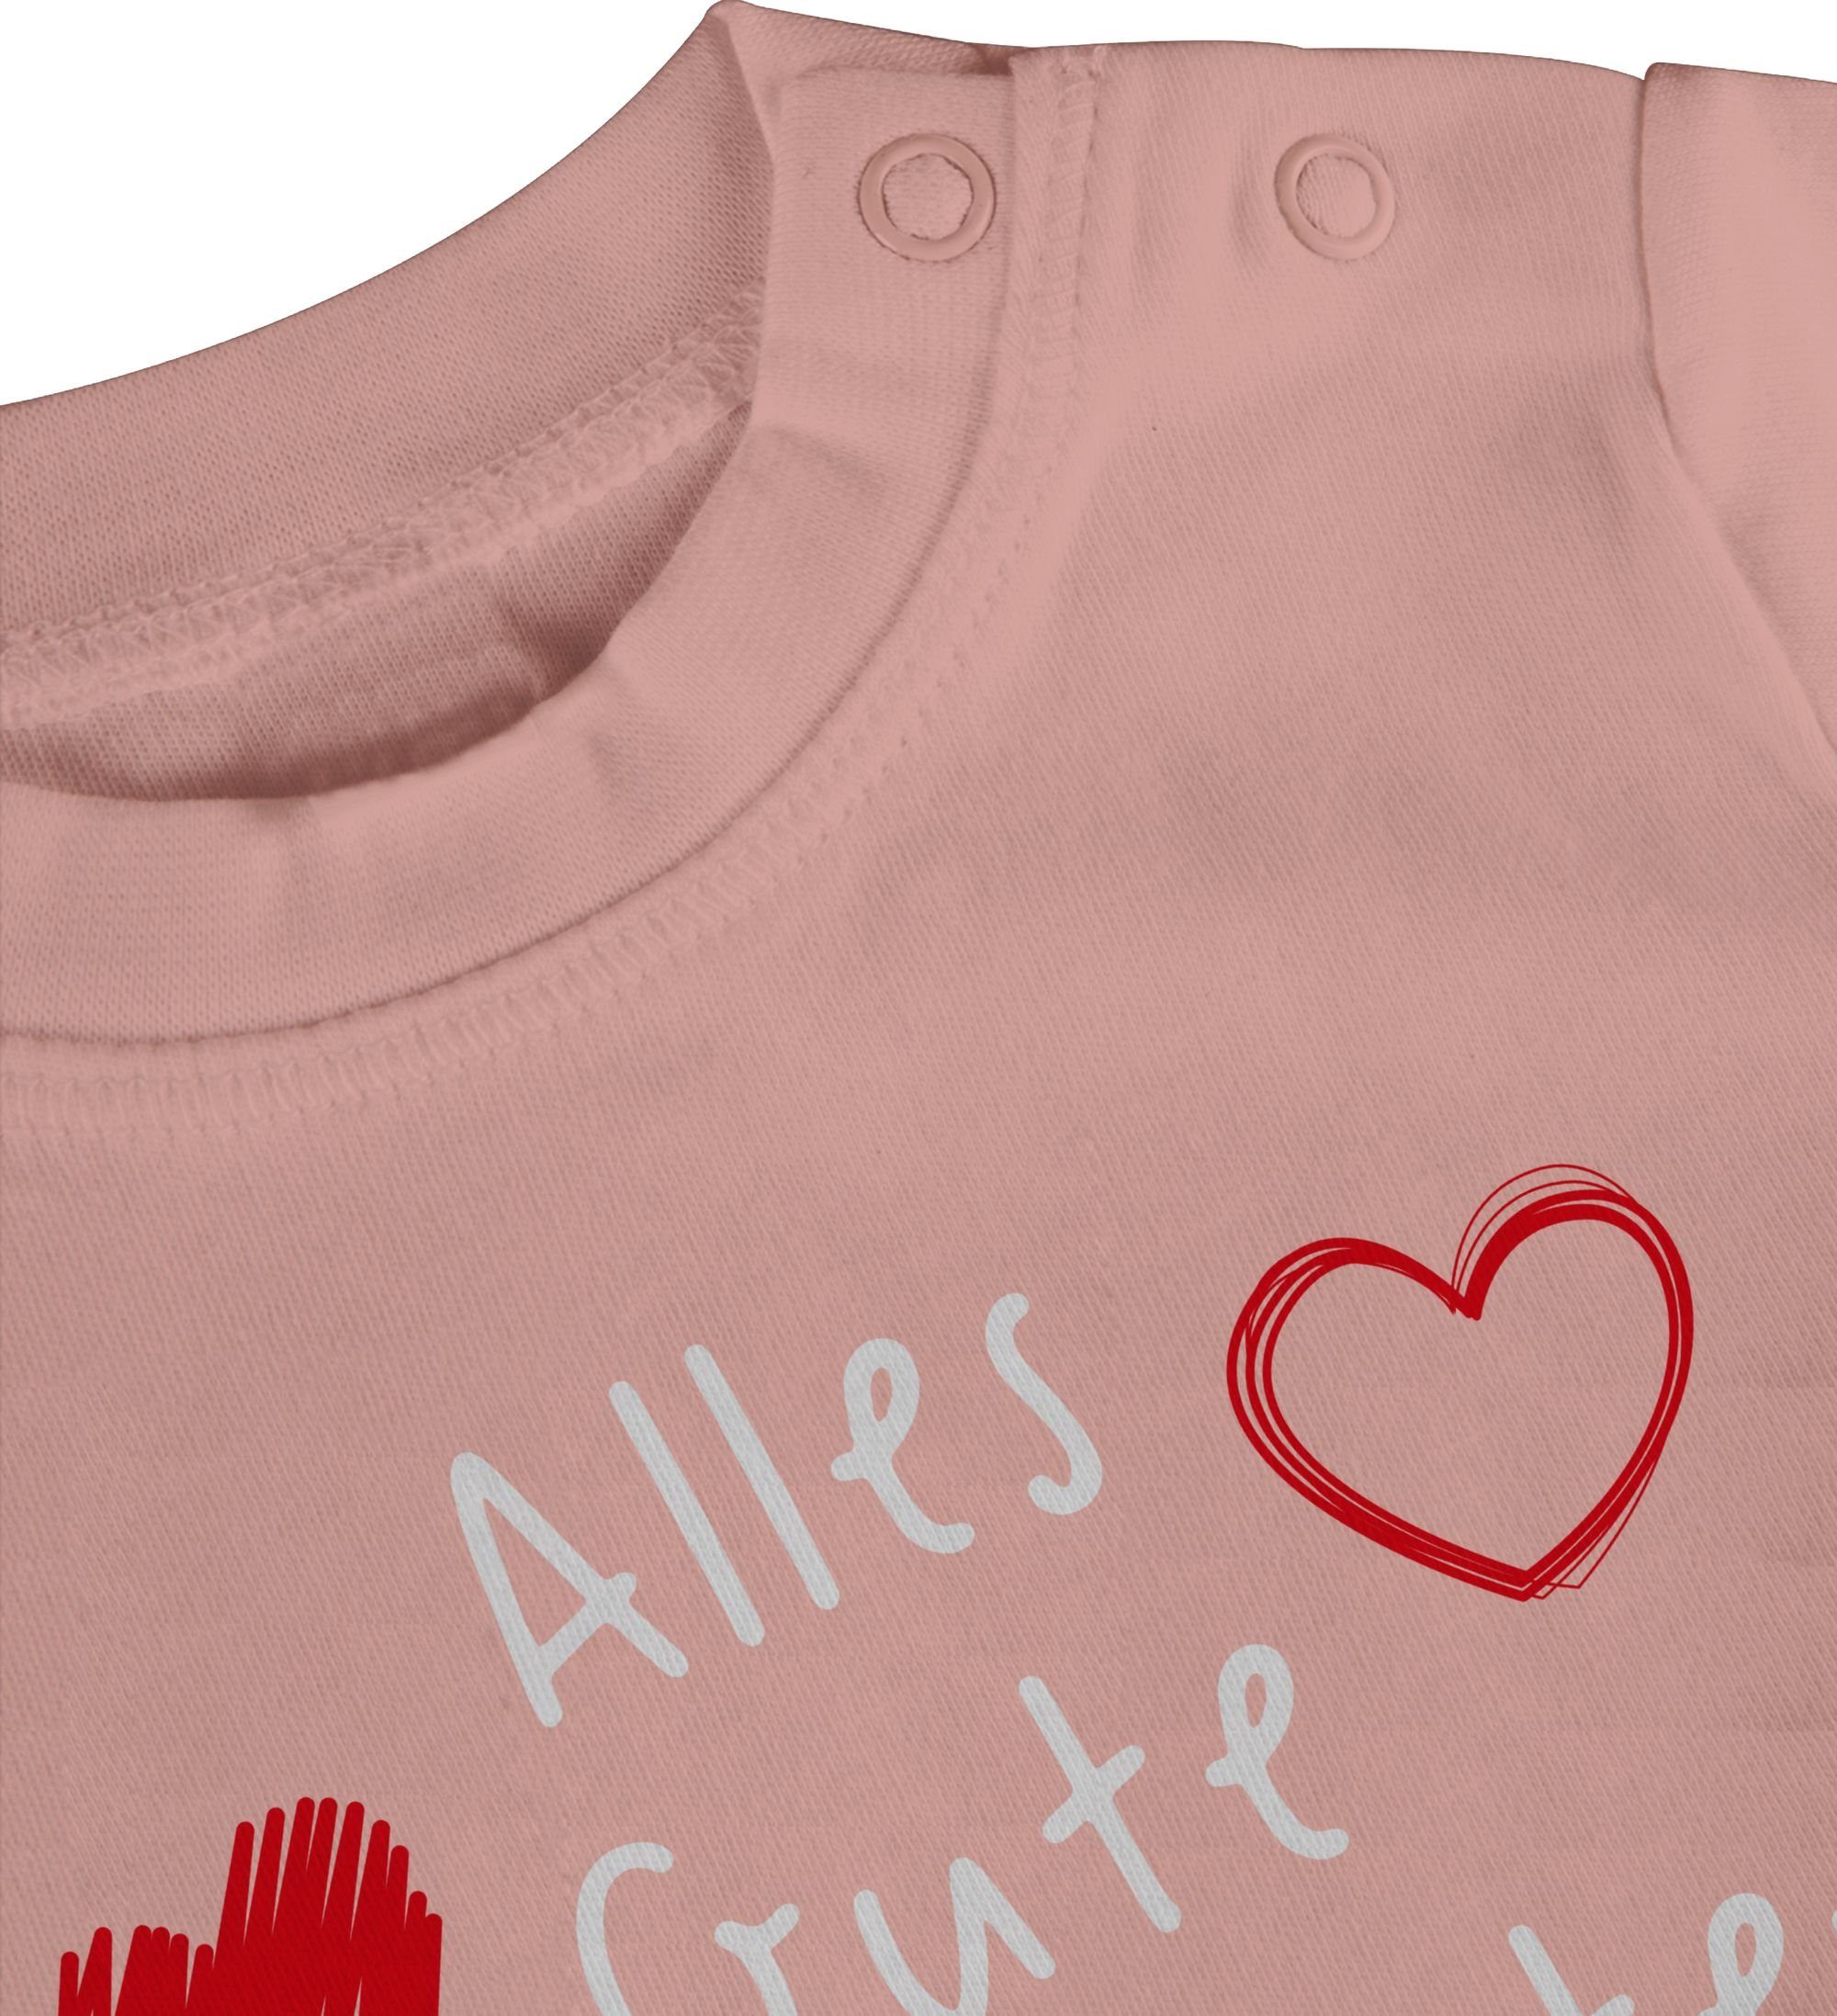 Shirtracer weiß 1 Baby Gute Vatertag Vatertag ersten T-Shirt zum Geschenk Alles Babyrosa Handschrift